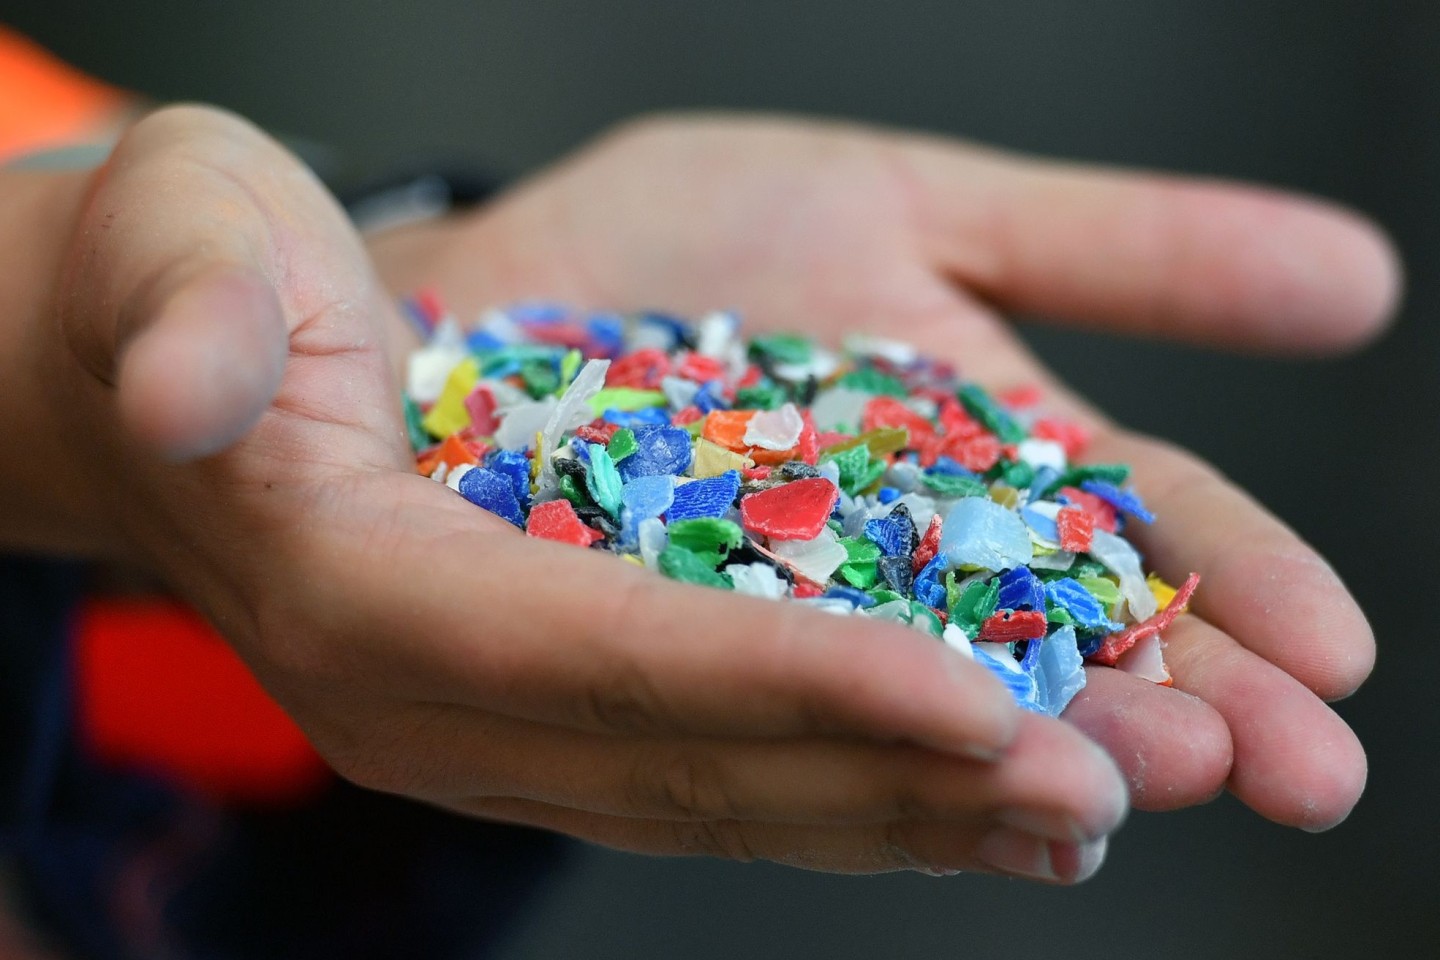 Forscher wollen eine Pflicht für die Industrie, sämtliche Inhaltsstoffe ihres Plastik offen zu legen.